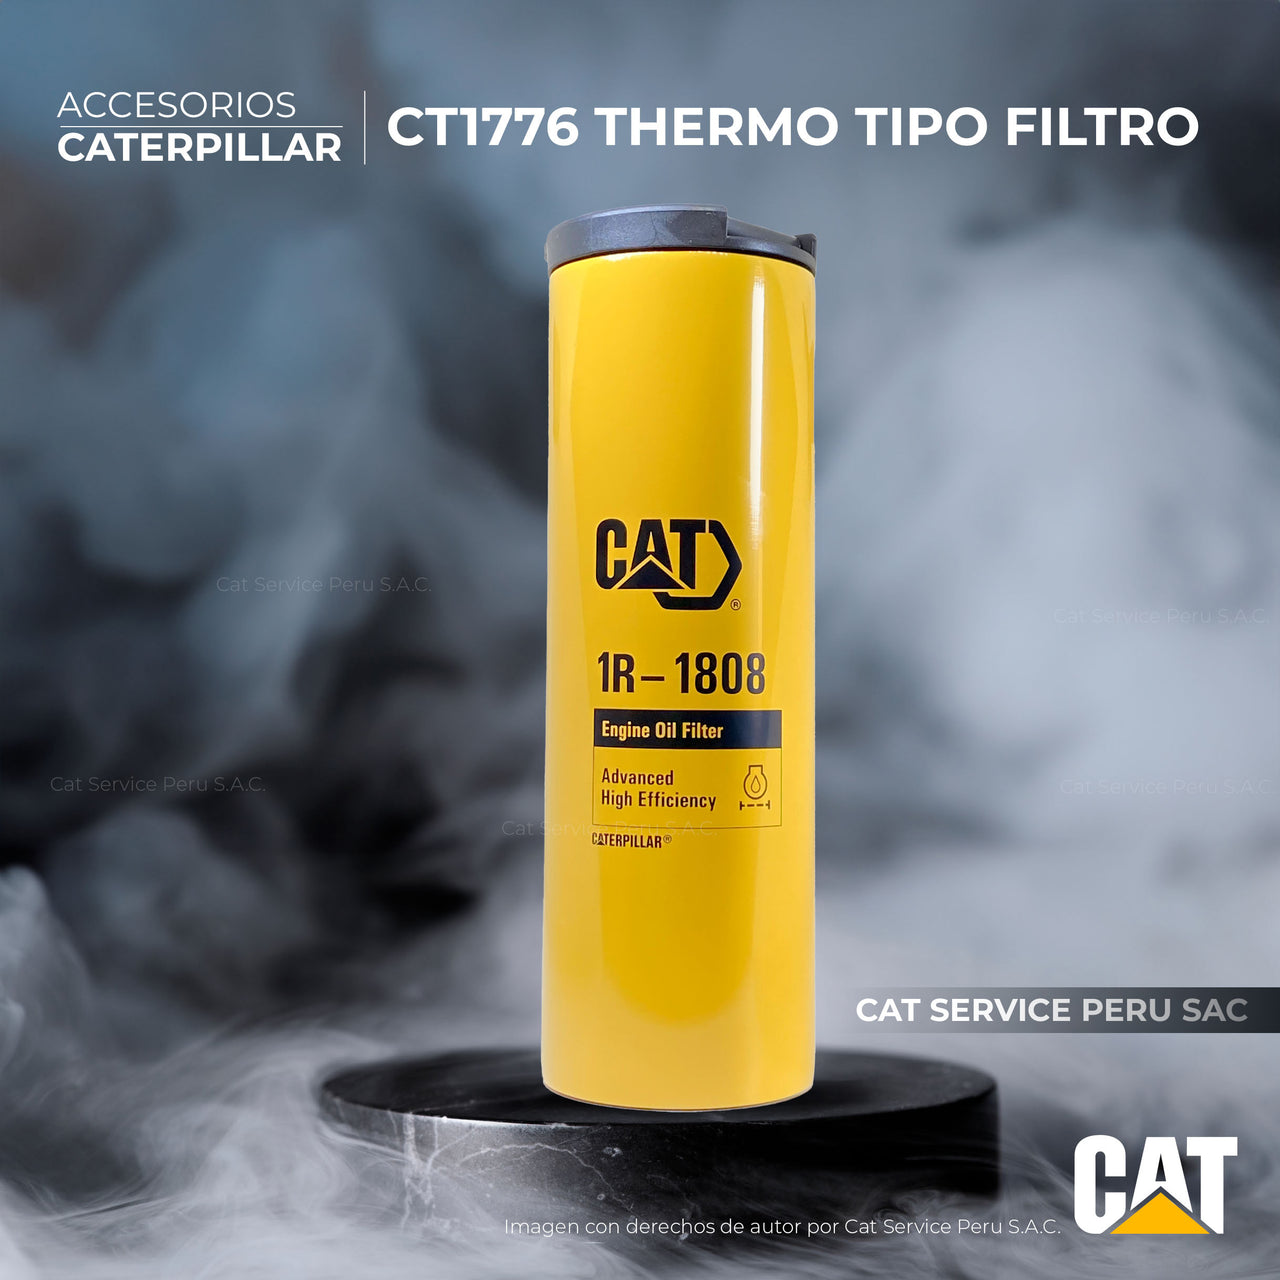 CT1776 थर्मो टाइप ऑयल फ़िल्टर कैट 1R-1808